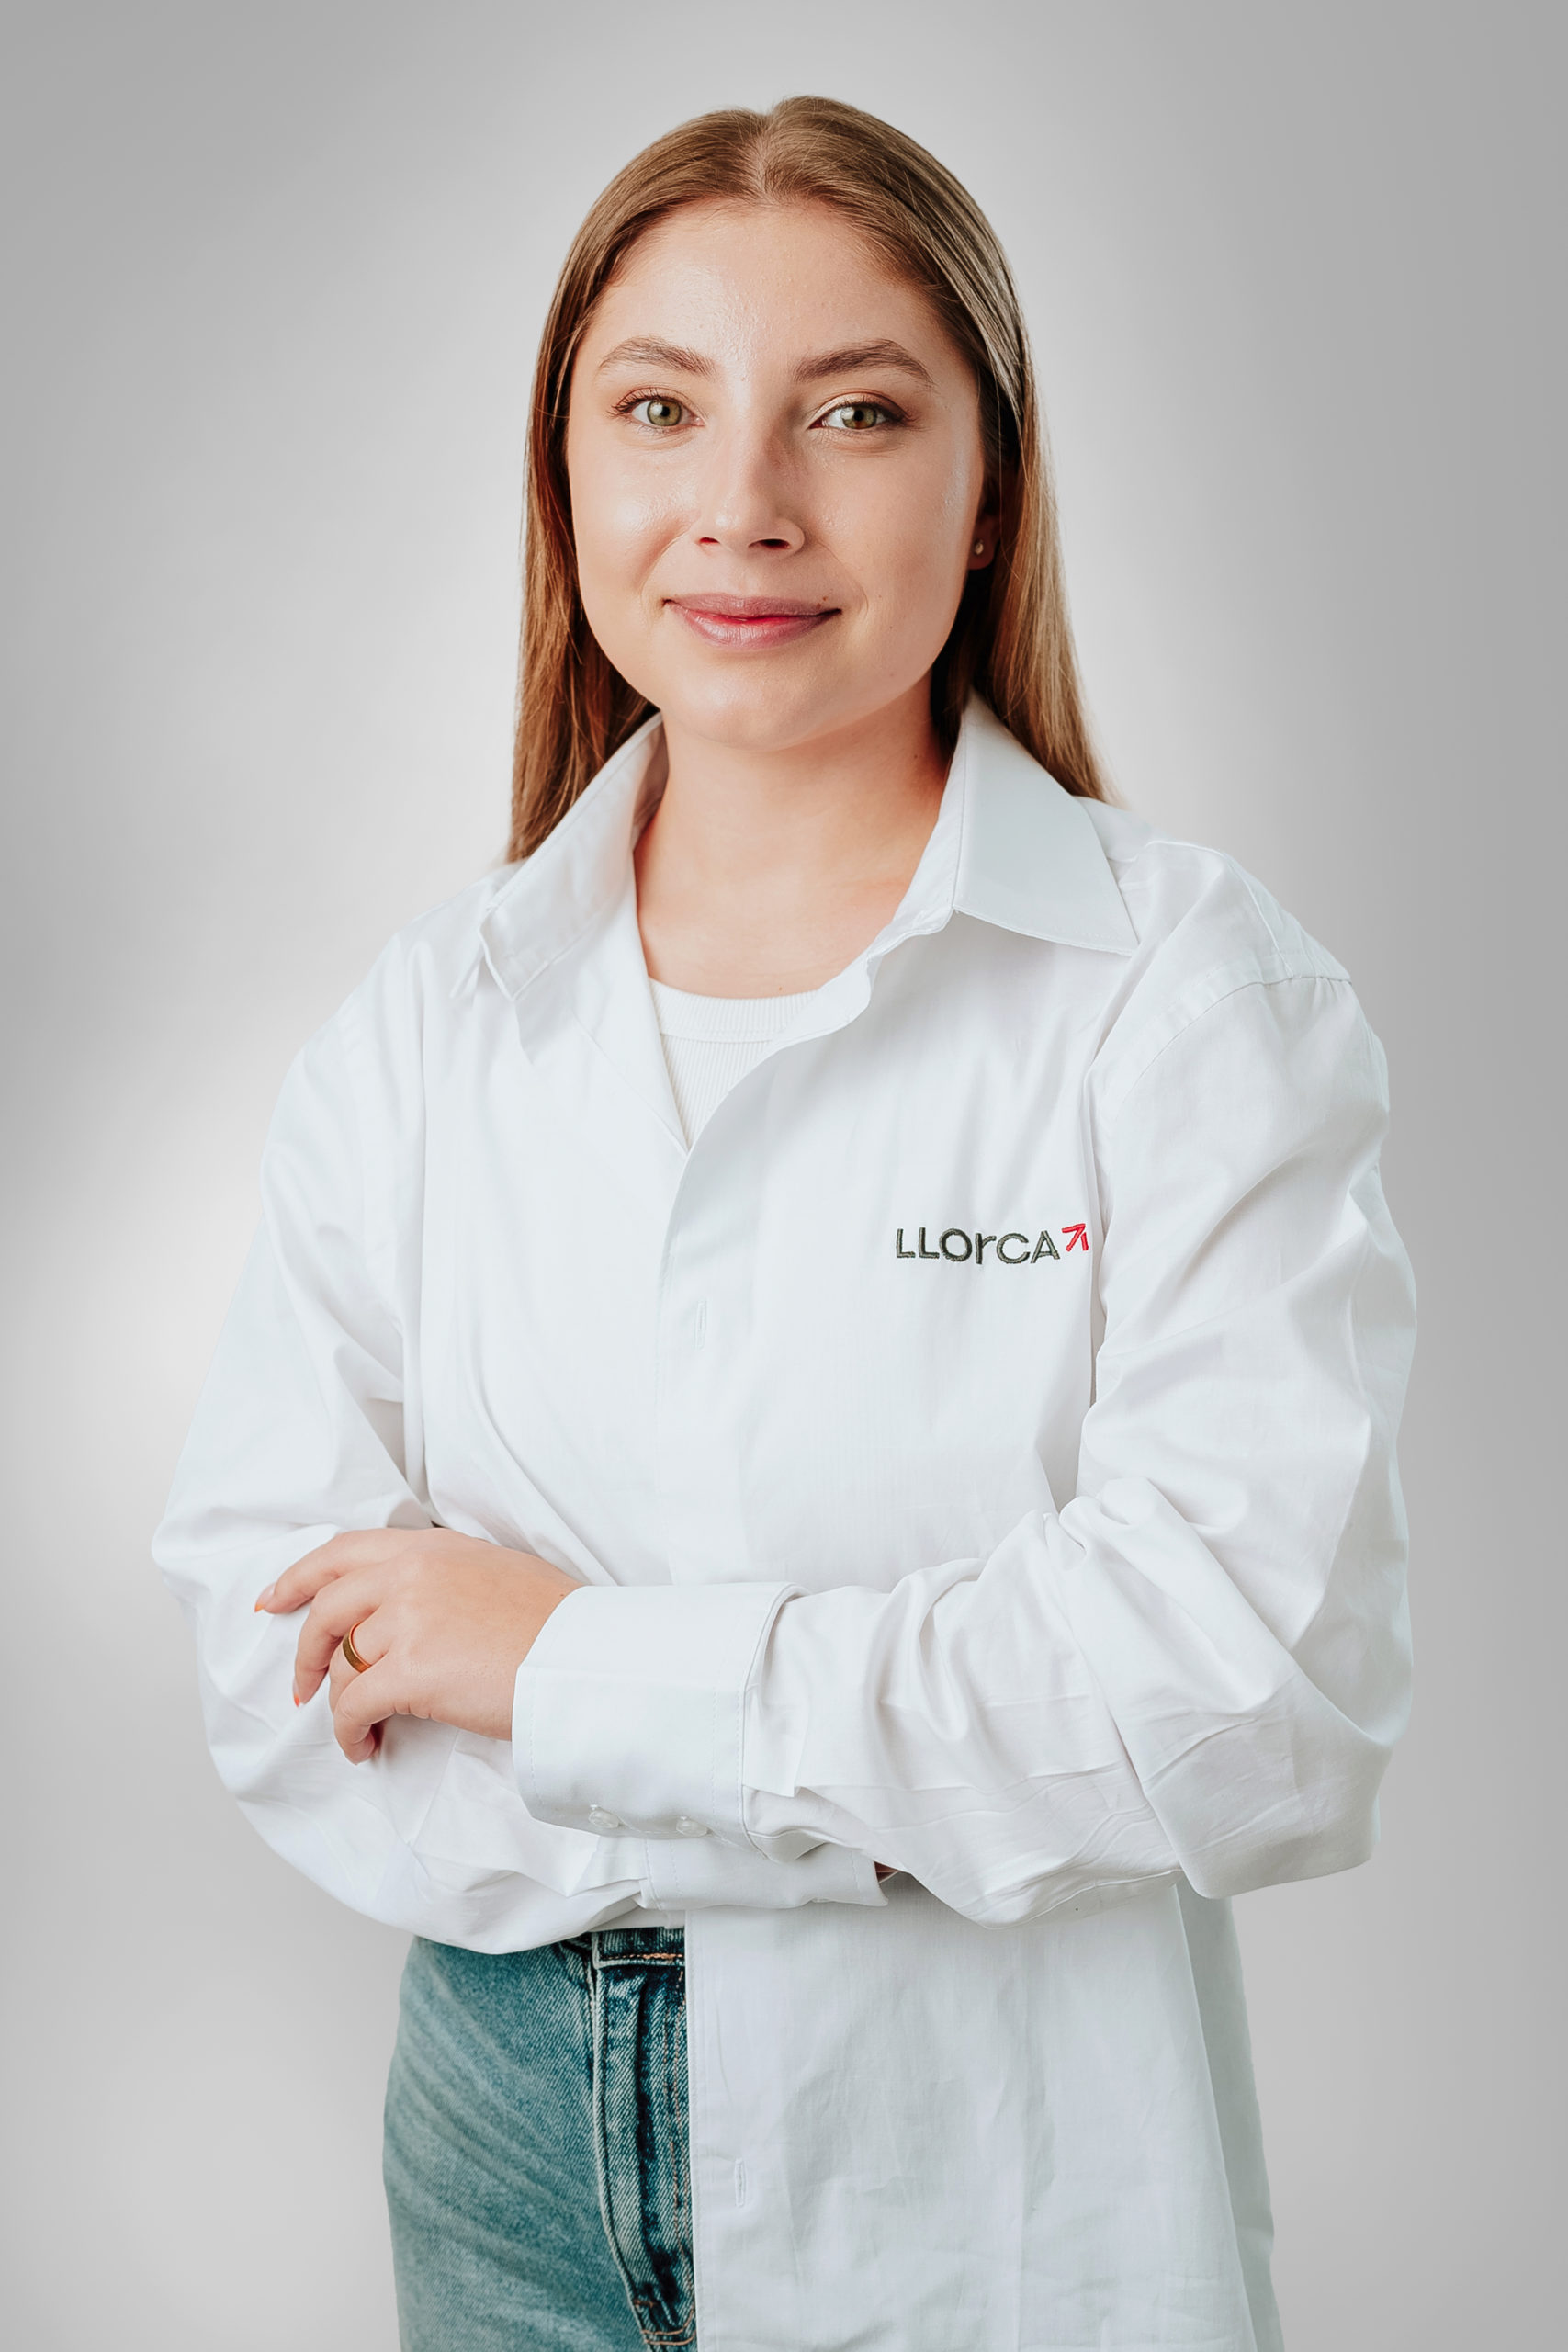 Mariya Gusenkova